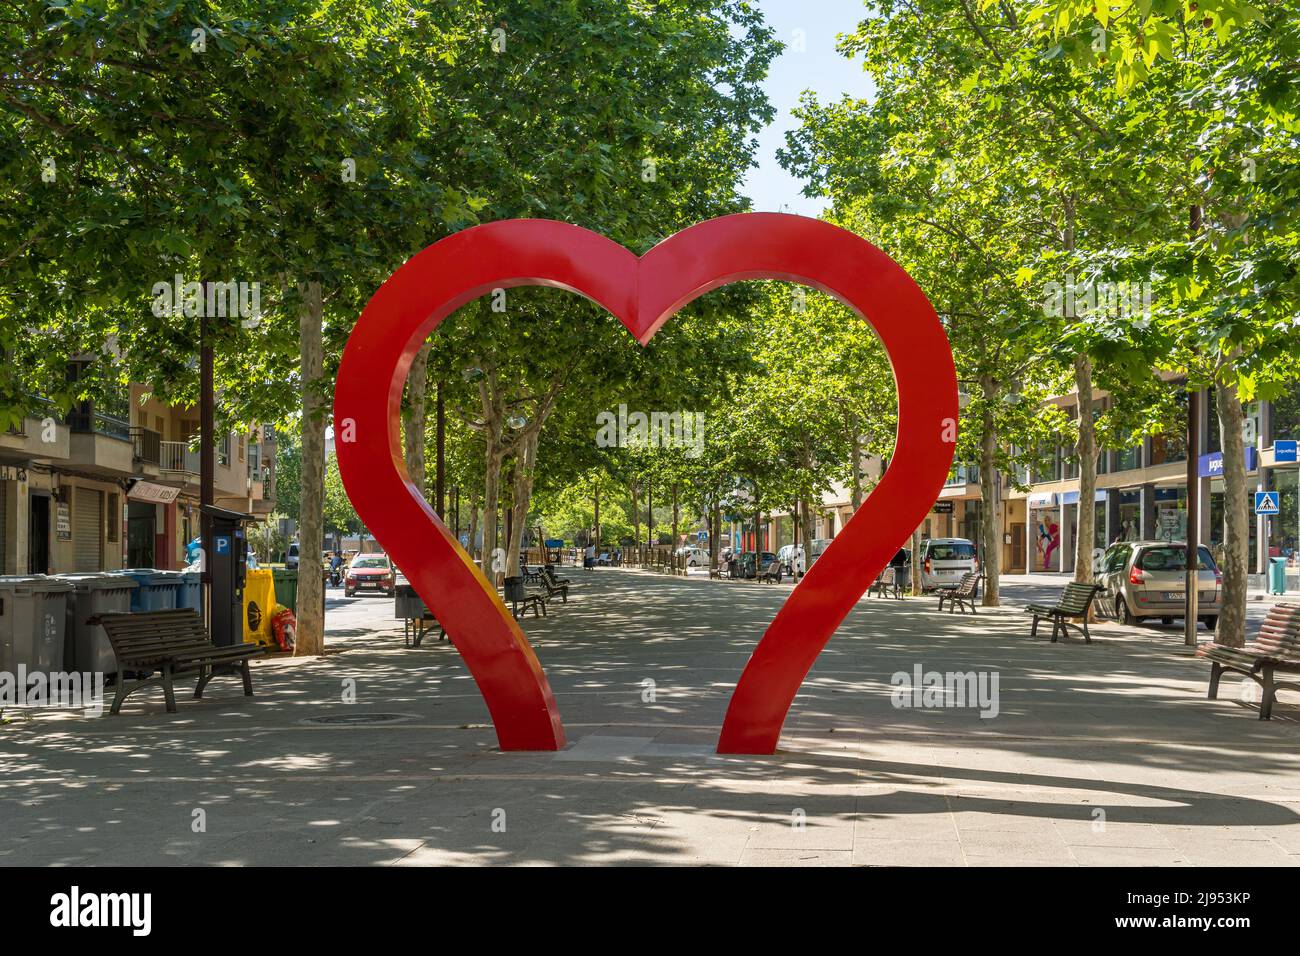 Manacor, España; mayo de 14 2022: Escultura urbana en forma de corazón rojo, situada en el centro histórico de la ciudad mallorquina de Manacor, España Foto de stock